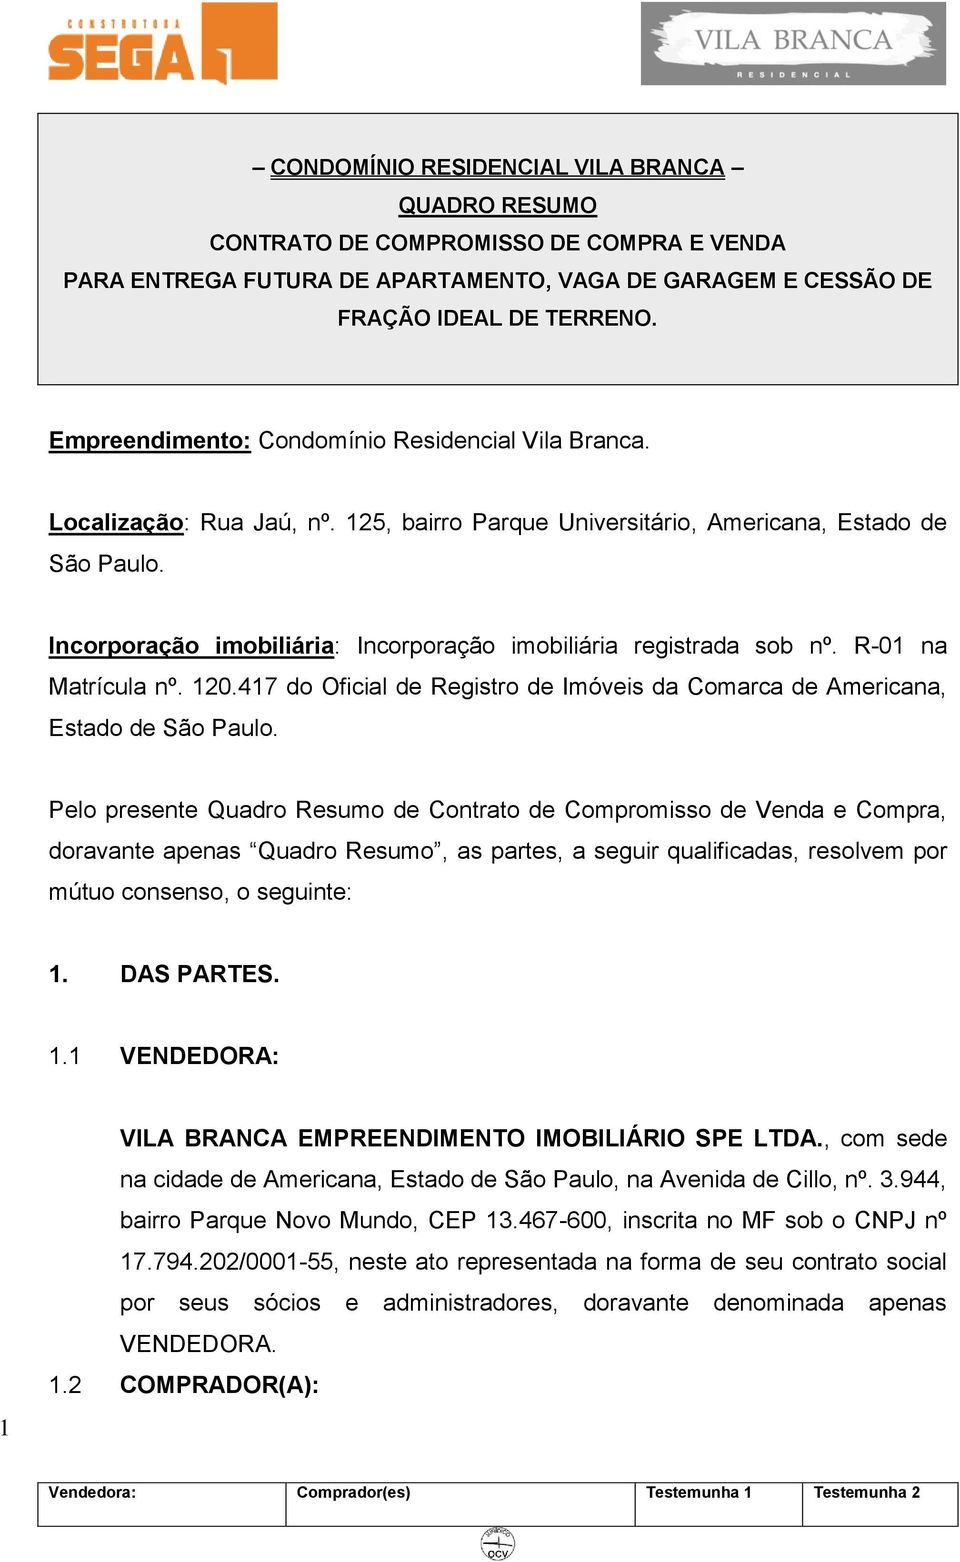 Incorporação imobiliária: Incorporação imobiliária registrada sob nº. R-01 na Matrícula nº. 120.417 do Oficial de Registro de Imóveis da Comarca de Americana, Estado de São Paulo.